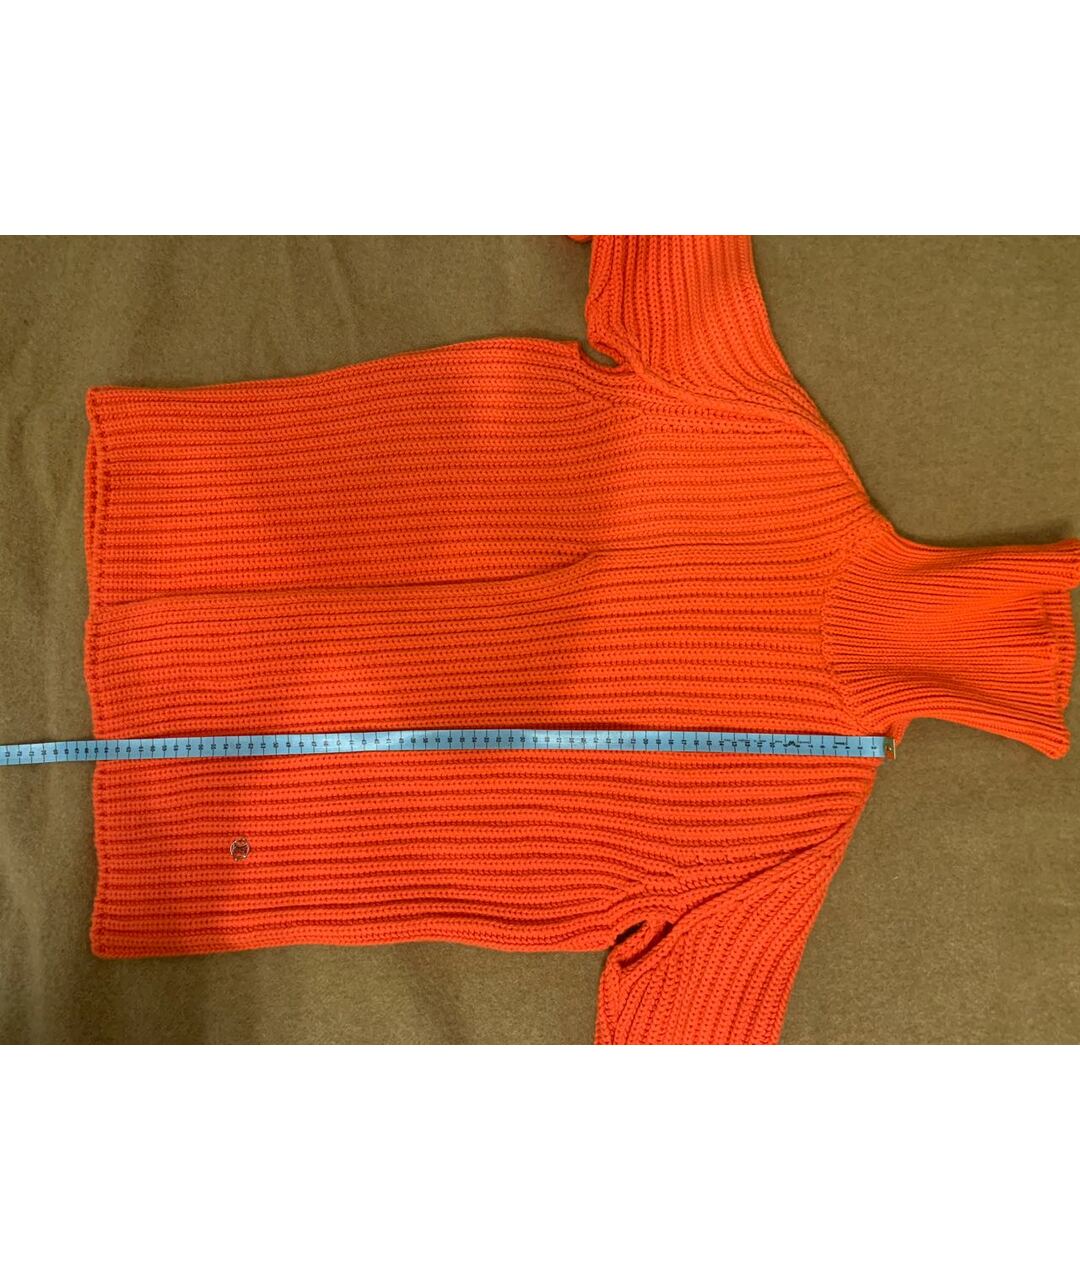 LOUIS VUITTON PRE-OWNED Оранжевый кашемировый джемпер / свитер, фото 8